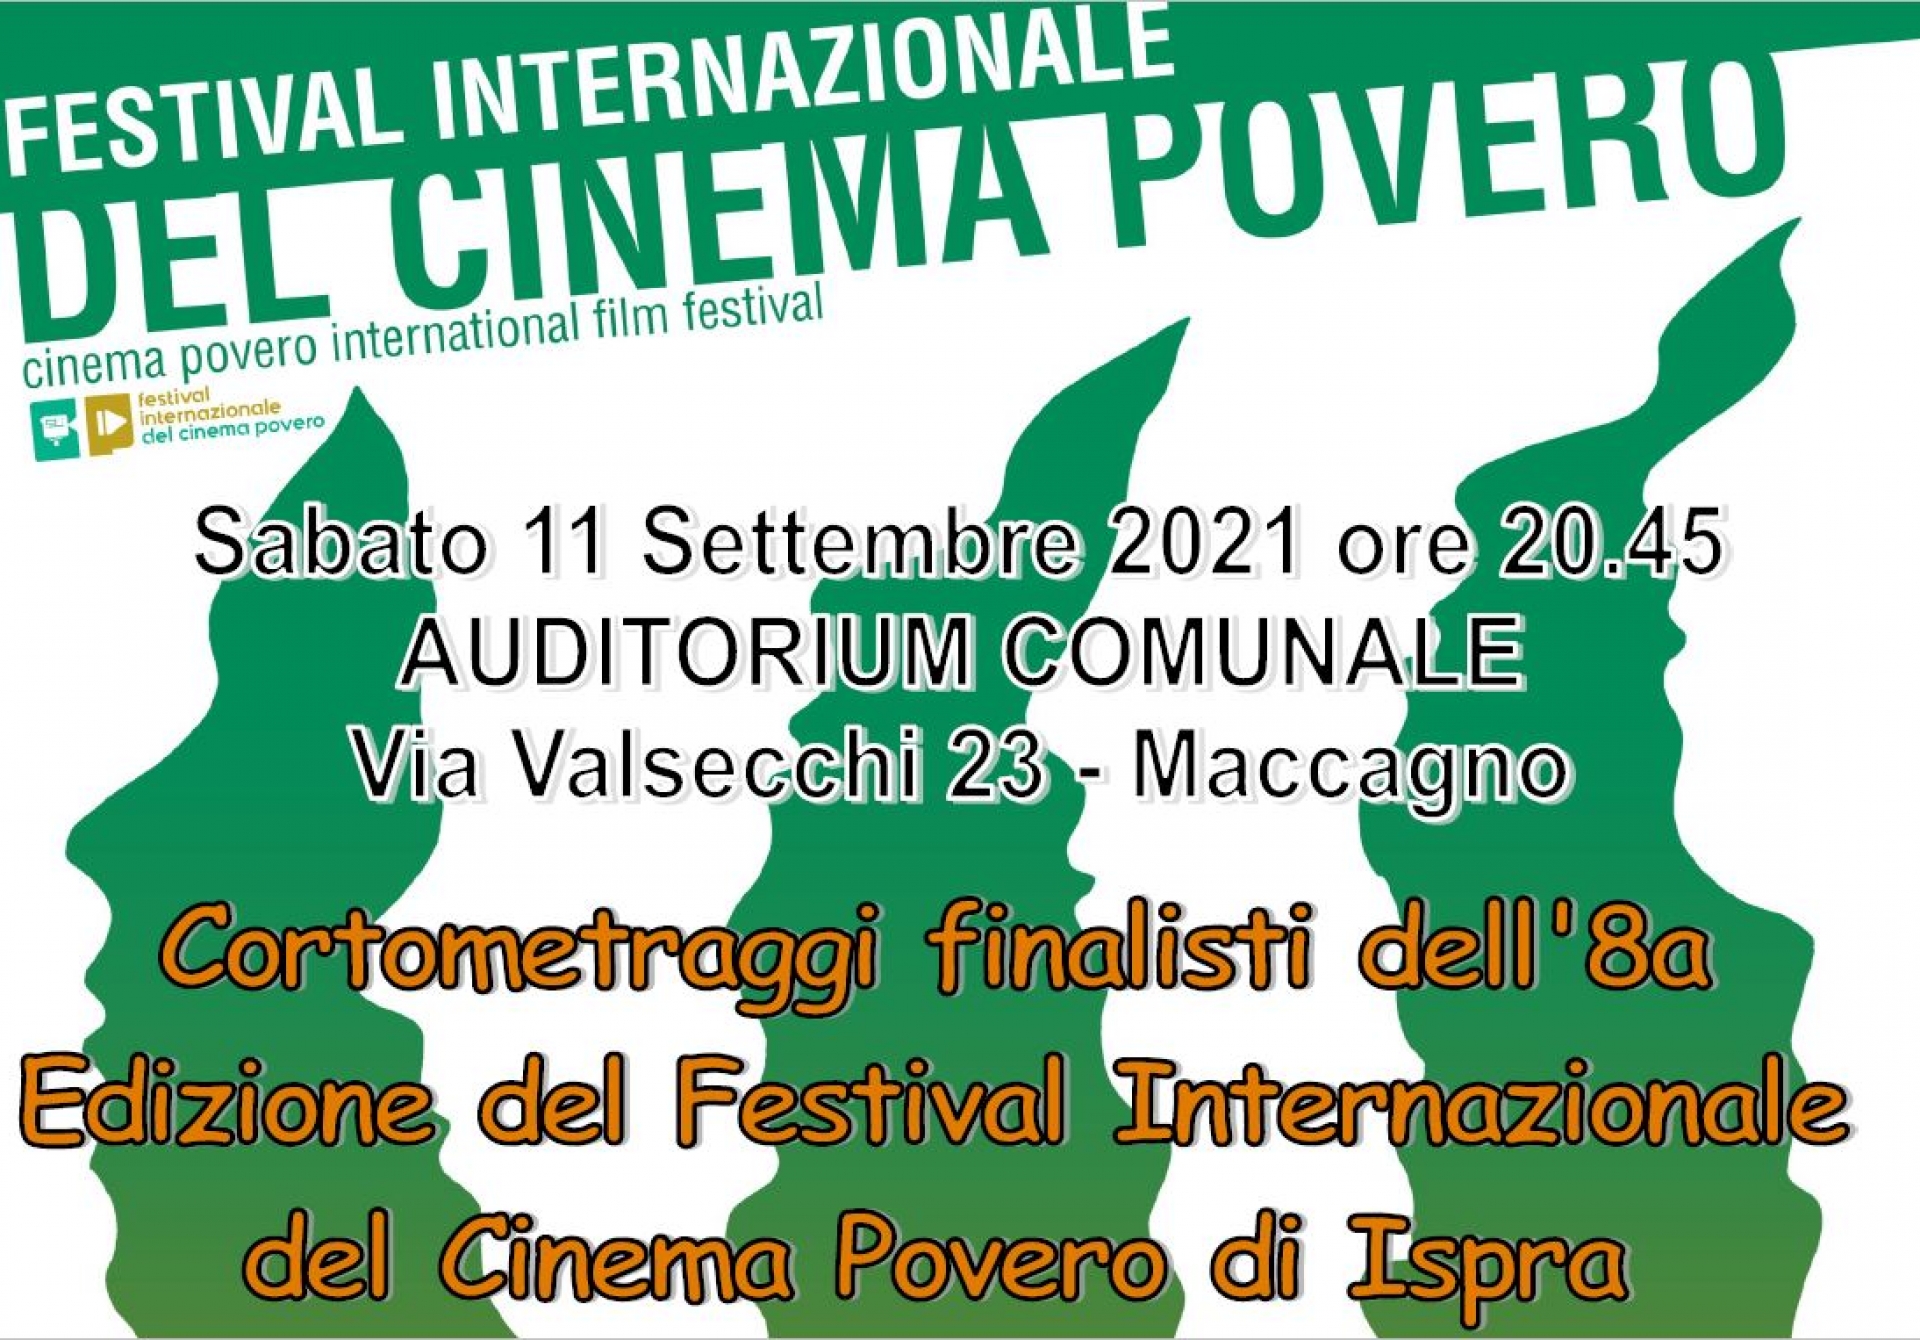 Cortometraggi finalisti dell’8° Edizione del Festival Internazionale del Cinema Povero di Ispra